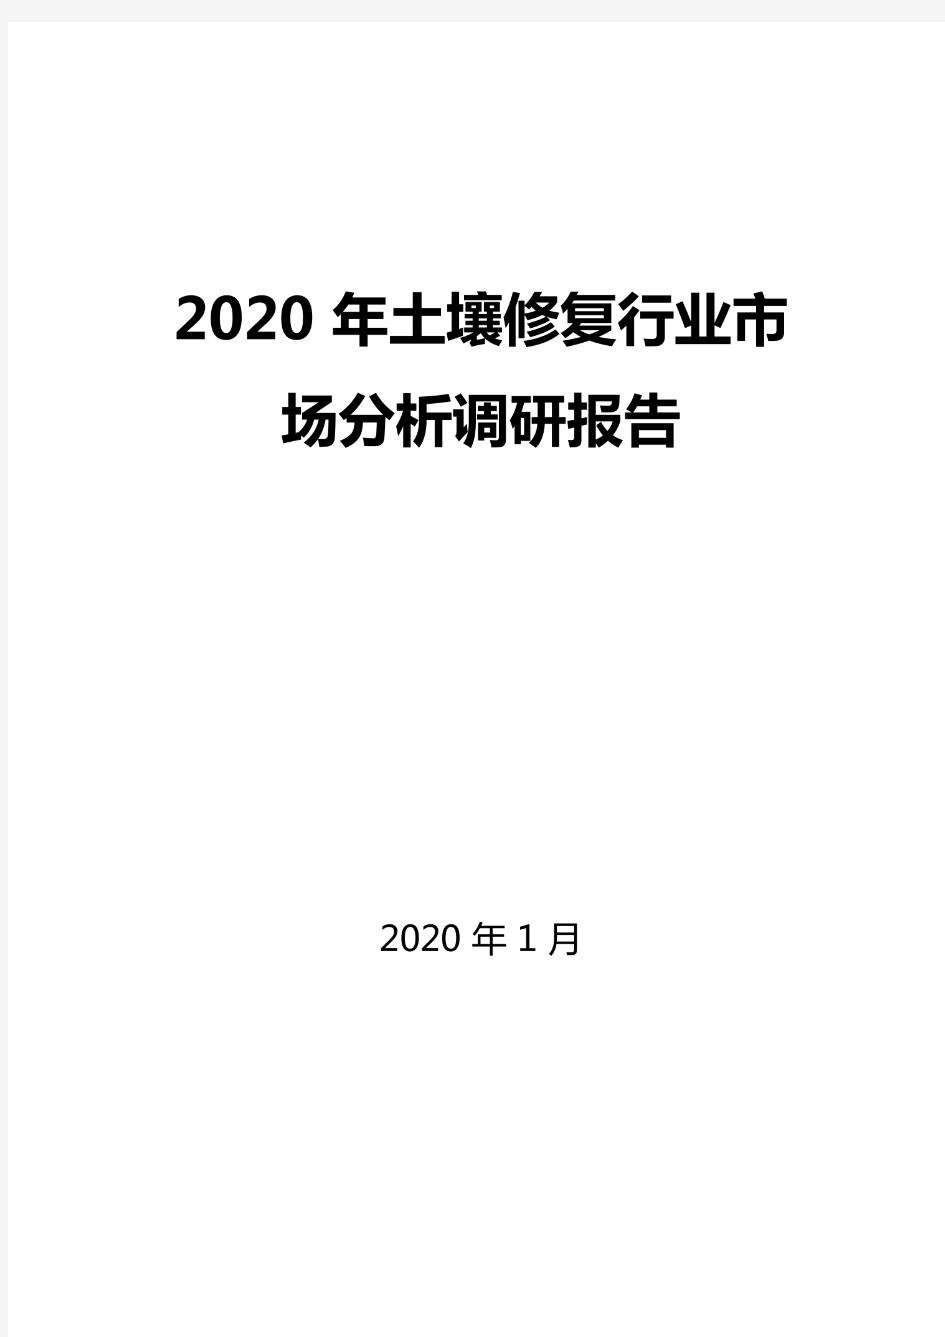 2020年土壤修复行业市场分析调研报告